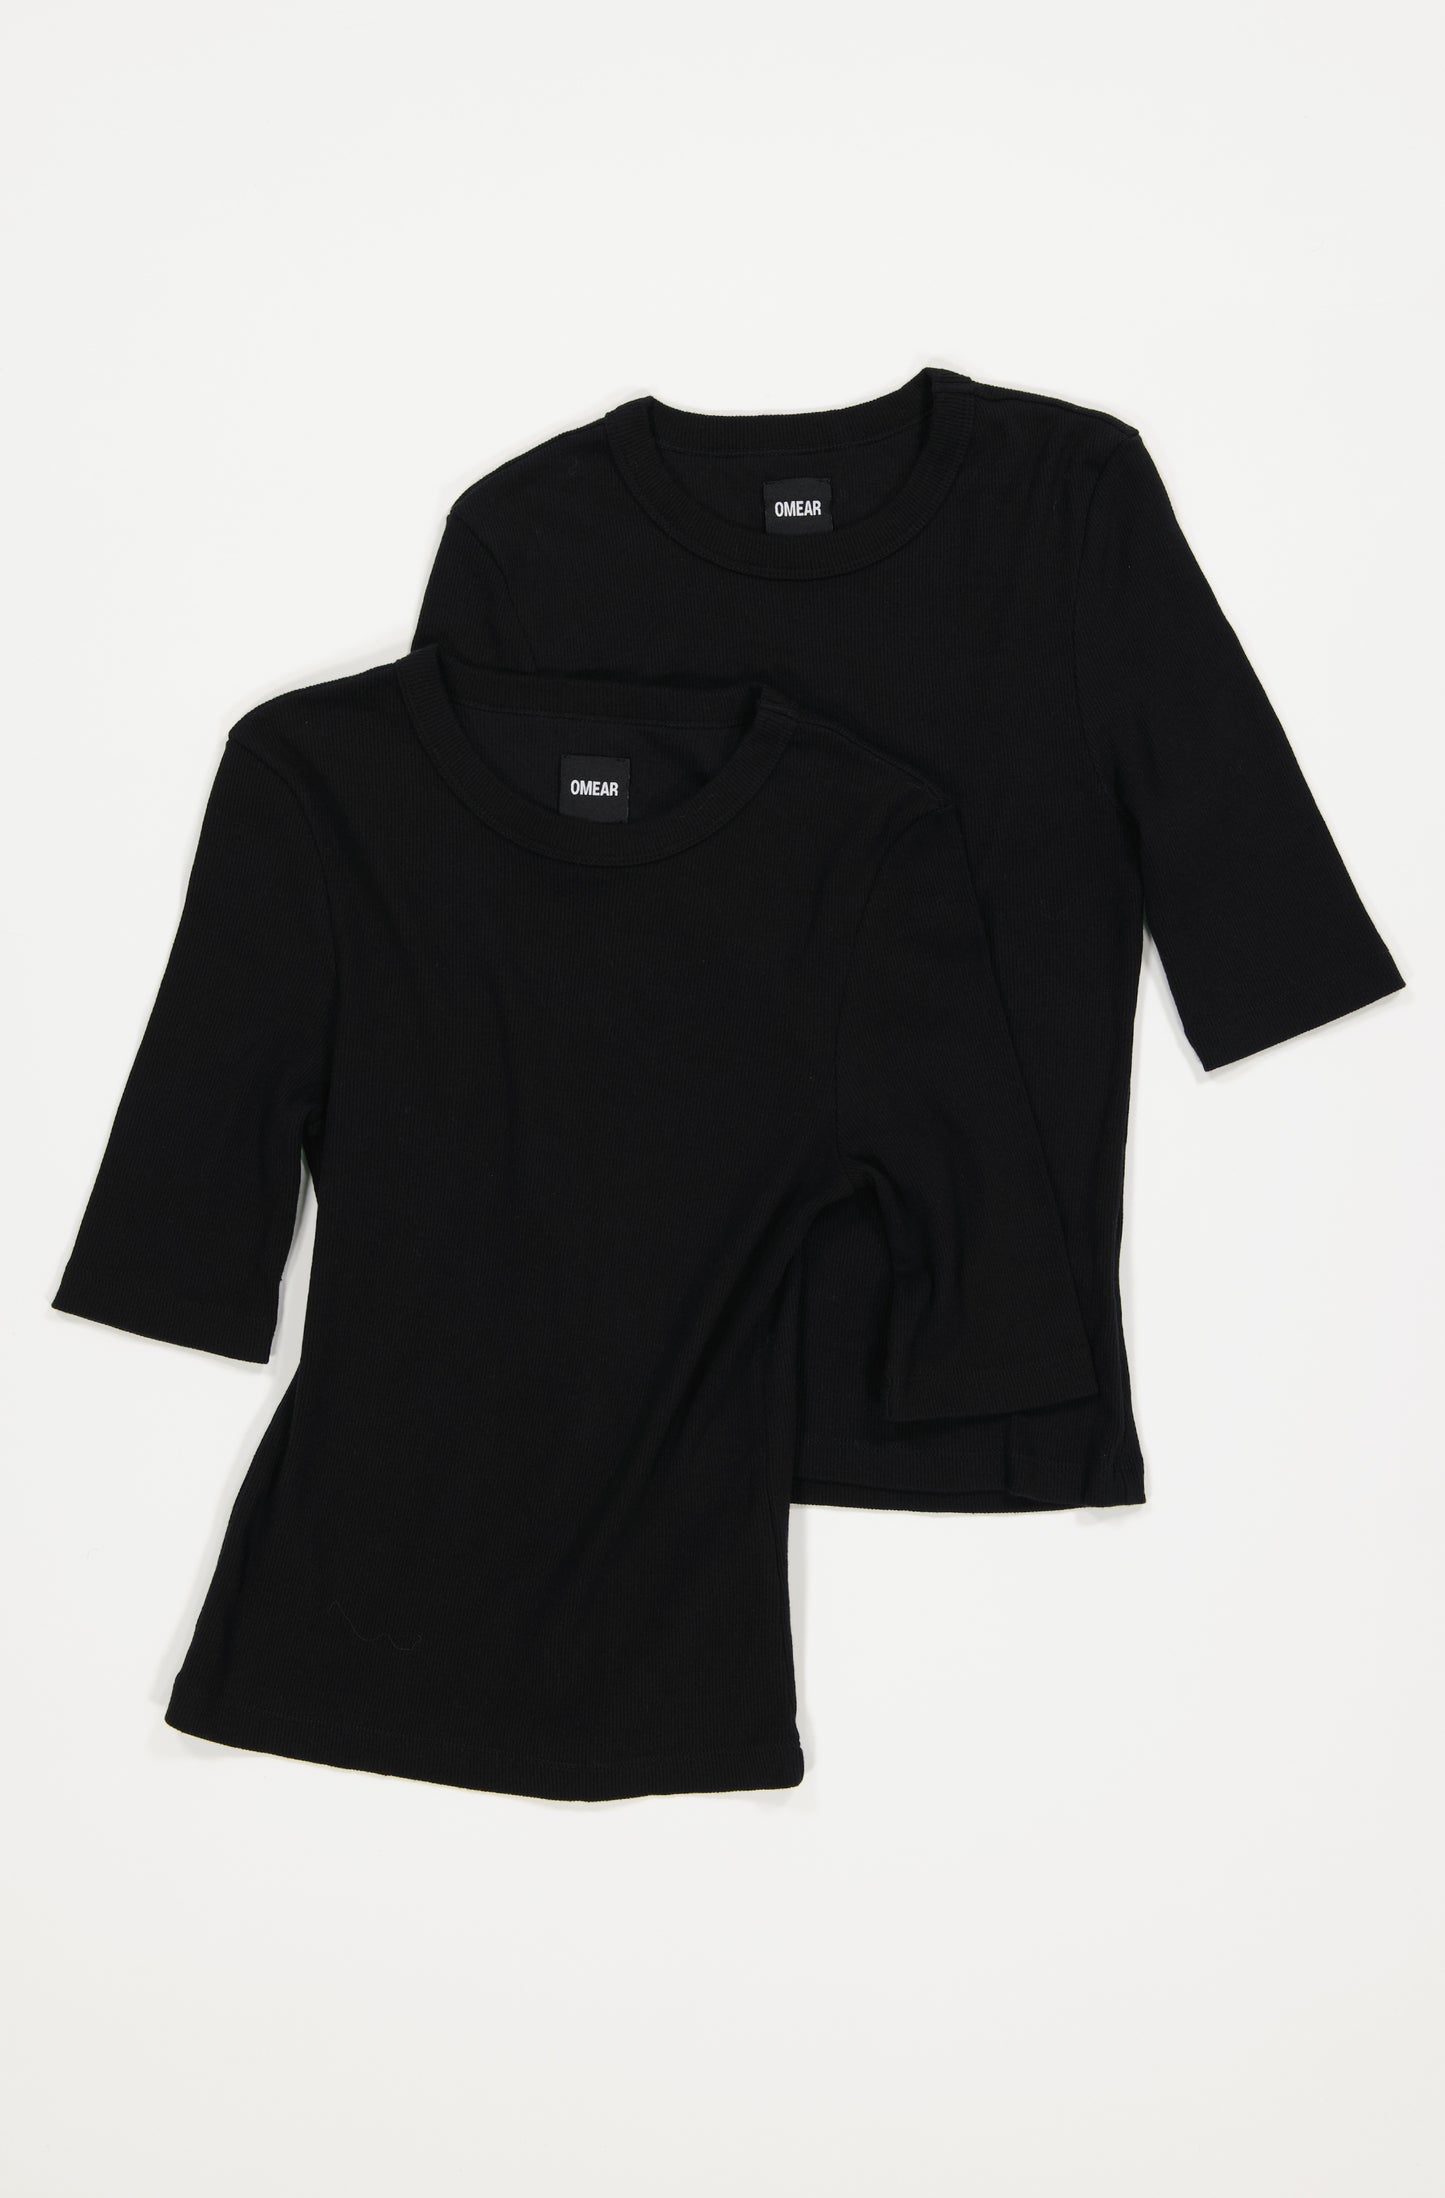 Le lot de 2 t-shirts à manches 3/4 en coton côtelé bio pour femme OMEAR, en noir 